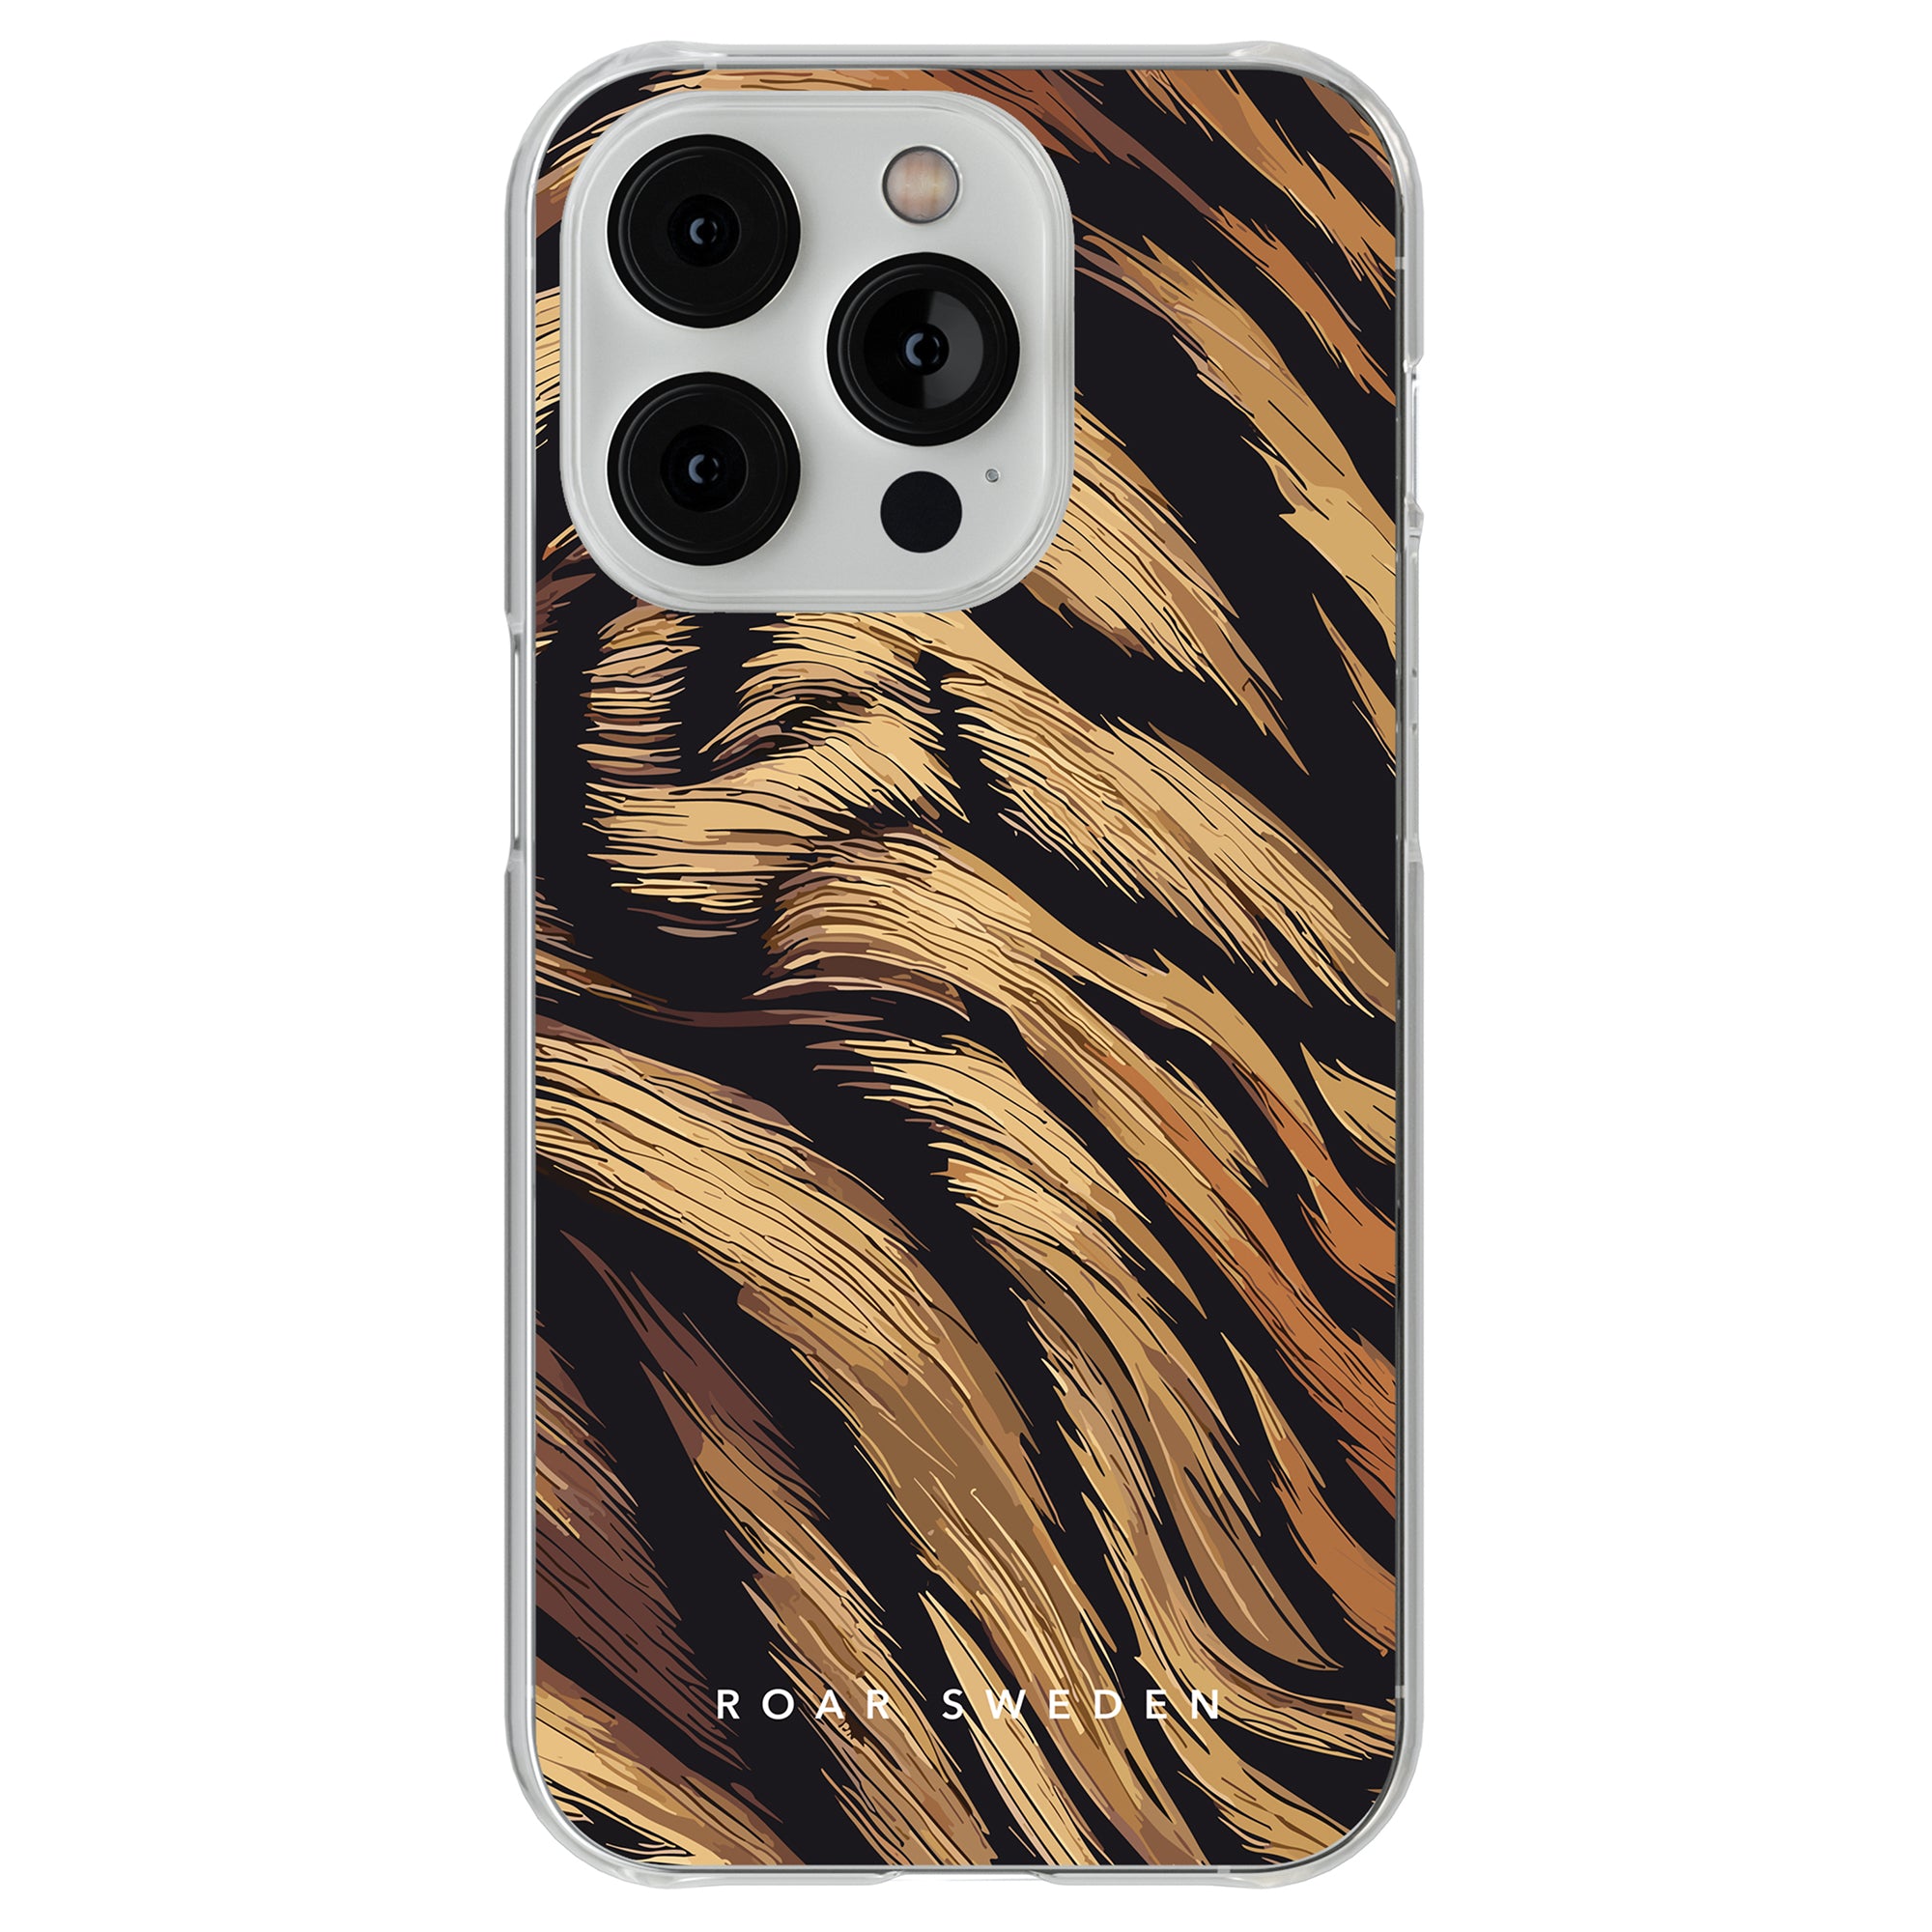 Roar Sweden ger dig en Tiger Fur - Clear Case, inspirerad av vildmarkens skönhet. Detta eleganta fodral är designat speciellt för iPhone 11, med en häftig tiger.